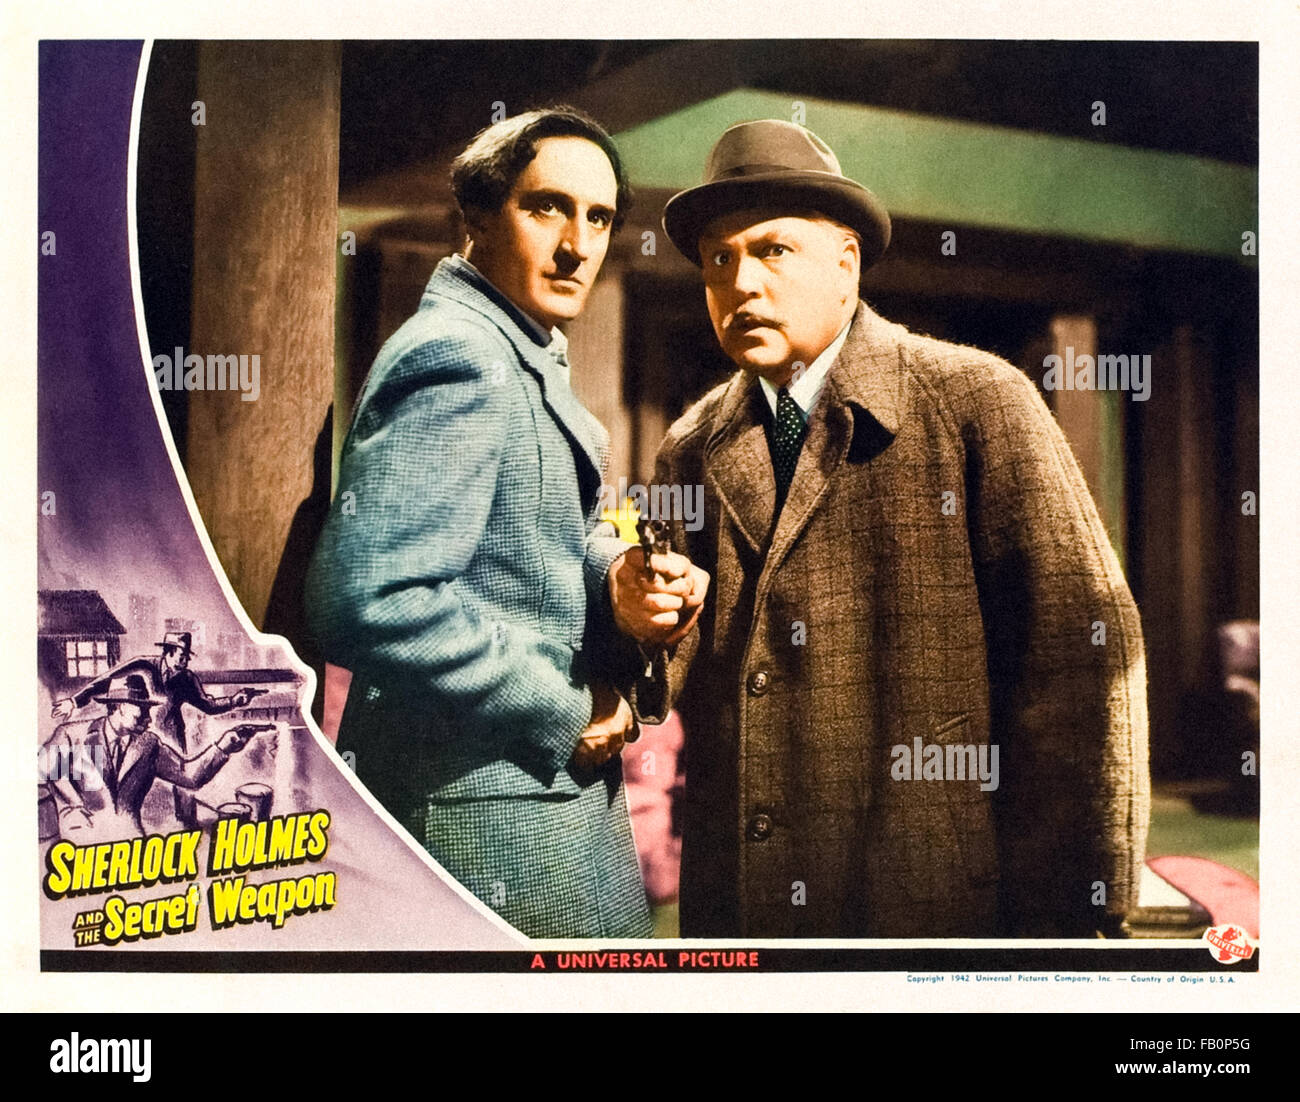 Lobby-Card für "Sherlock Holmes und die Geheimwaffe" 1942 Sherlock Holmes Film unter der Regie von Roy William Neill mit Basil Rathbone (Holmes) und Nigel Bruce (Watson). Stockfoto